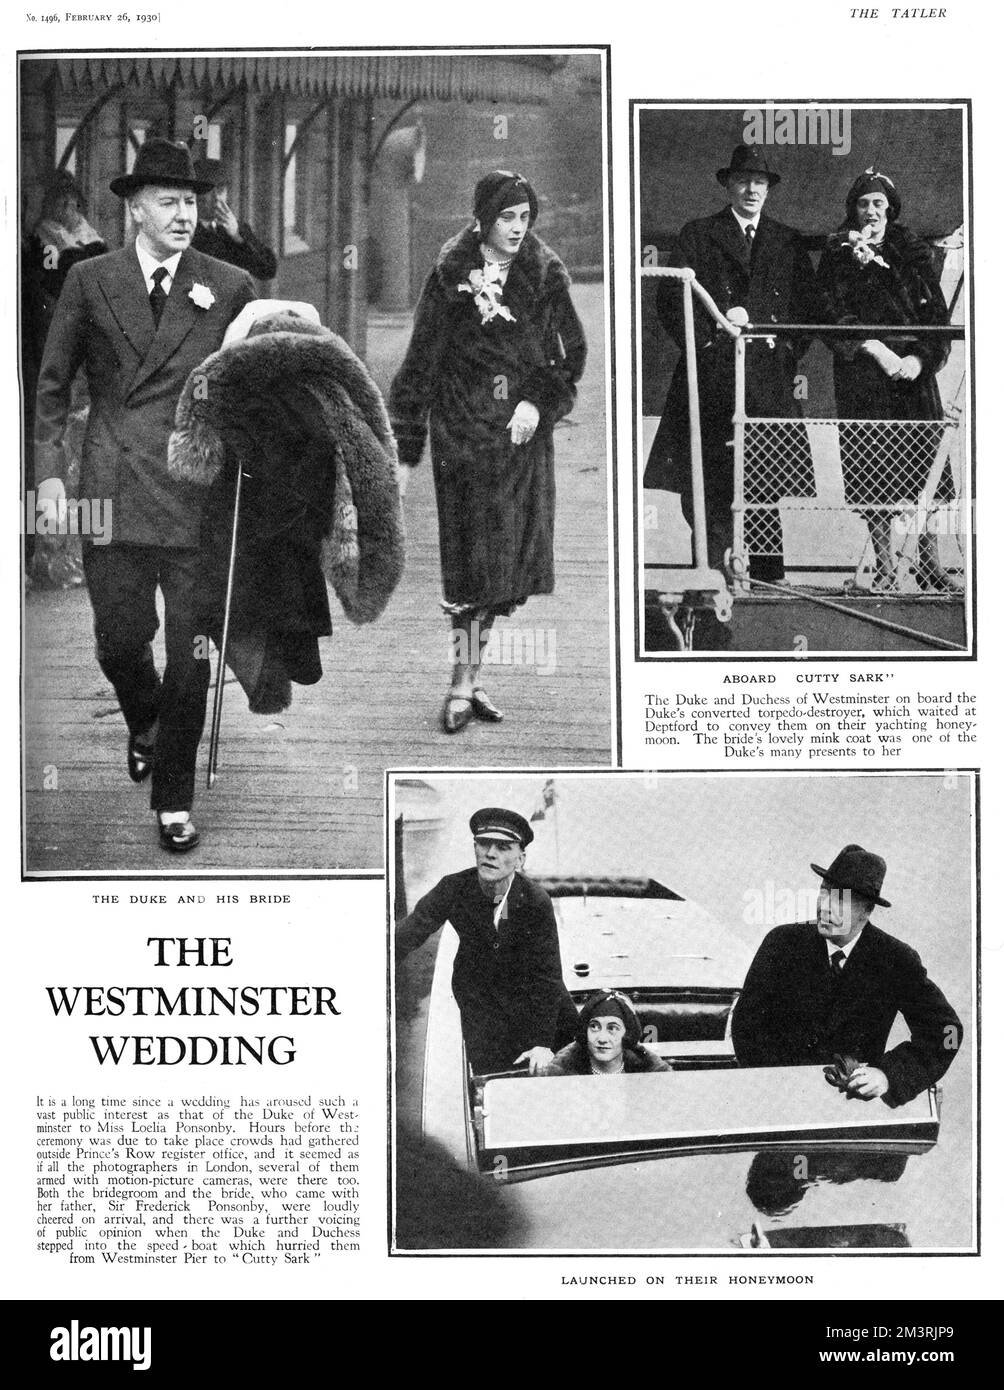 Seite von The Tatler berichtet über die gesellschaftliche Hochzeit von Hugh Grosvenor, 2.. Herzog von Westminster und Loelia Ponsonby (seine dritte Frau) am 20. Februar 1930 im Prince's Row-Standesamt. Die Bilder zeigen den Herzog und seine neue Braut, die vom Westminster Pier mit einem Schnellboot abfahren. Von dort aus gingen sie an Bord des umgebauten Torpedoe-Zerstörers des Herzogs, dem Cutty Sark, der in Deptford wartete, um sie auf ihre Jacht-Flitterwochen zu bringen. Der Pelzmantel von Loelia war eines der vielen Hochzeitsgeschenke des Herzogs für sie. Das Paar, das nie Kinder hatte, ließ sich 1947 nach jahrelanger Trennung scheiden. 1930 Stockfoto